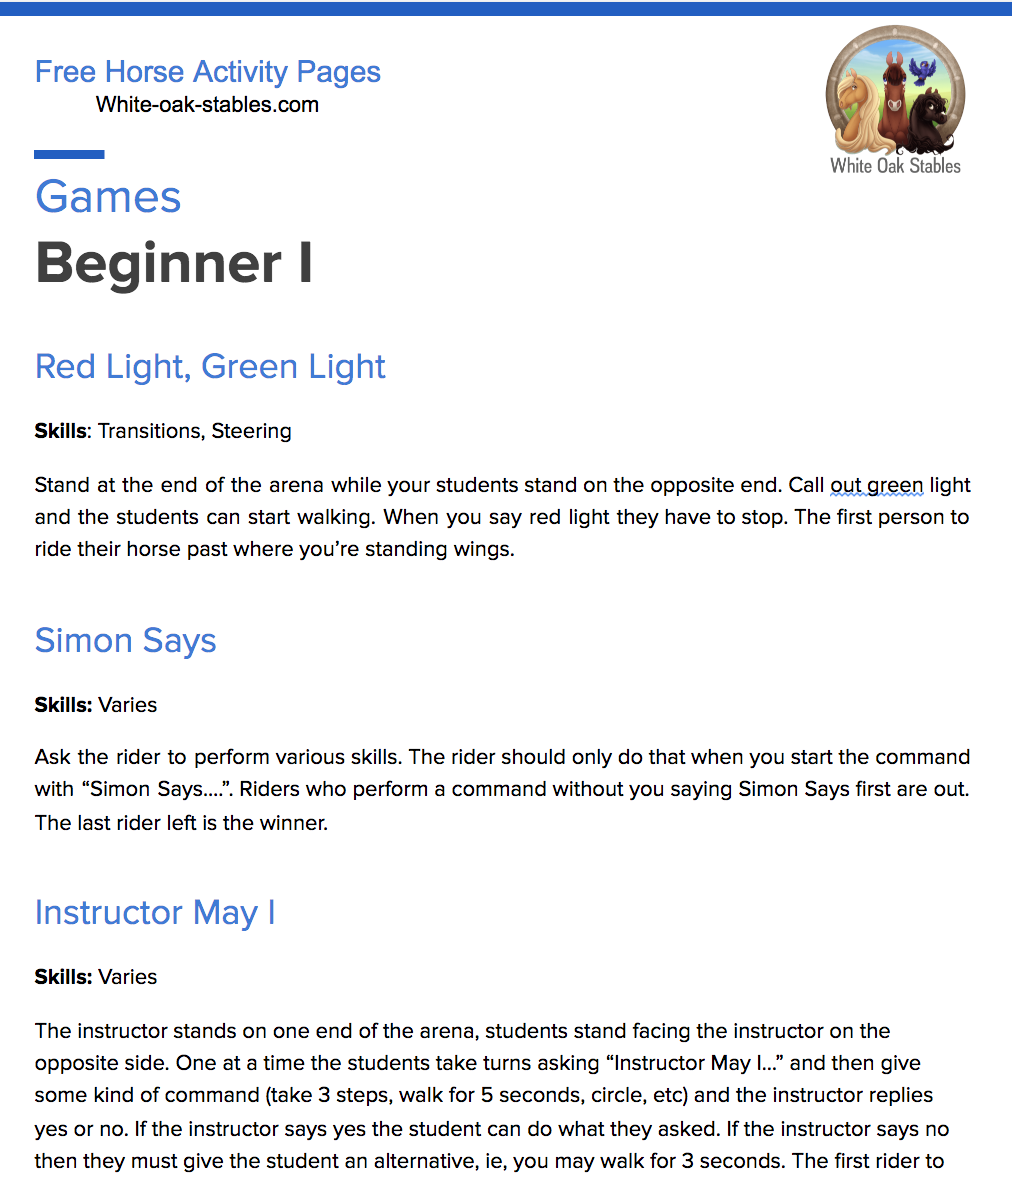 Games – Beginner I